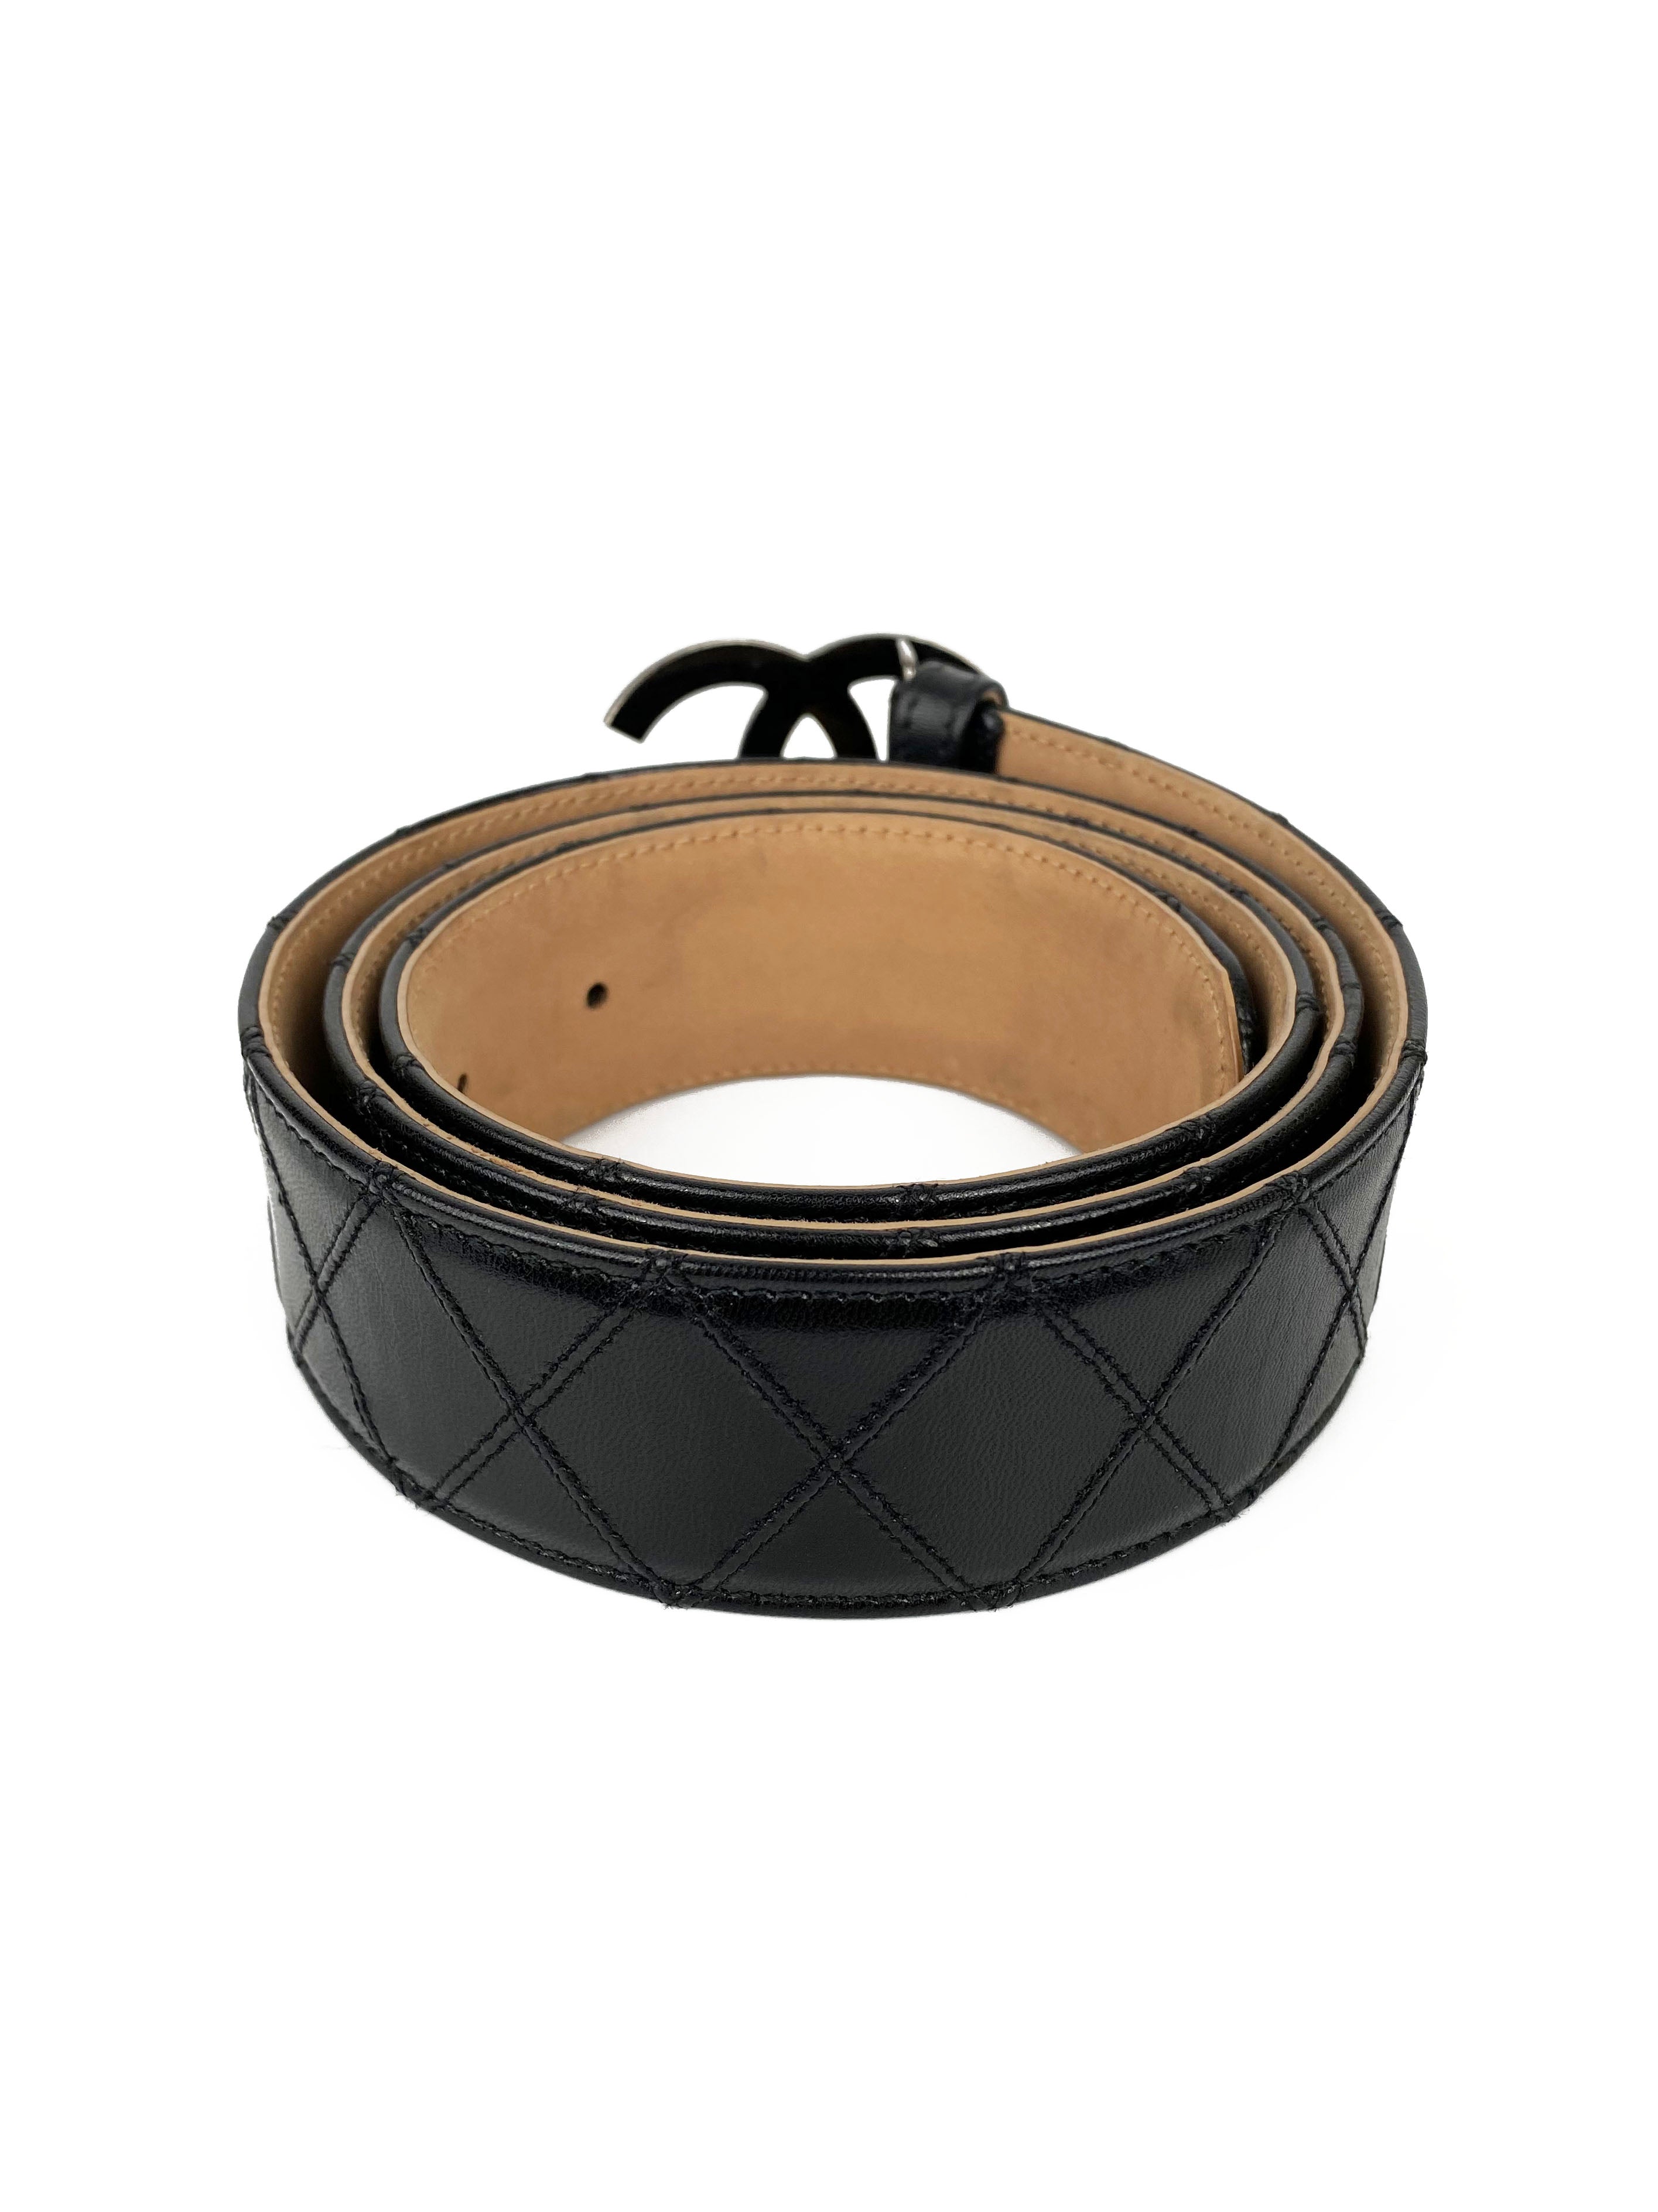 chanel-black-logo-belt-5.jpg